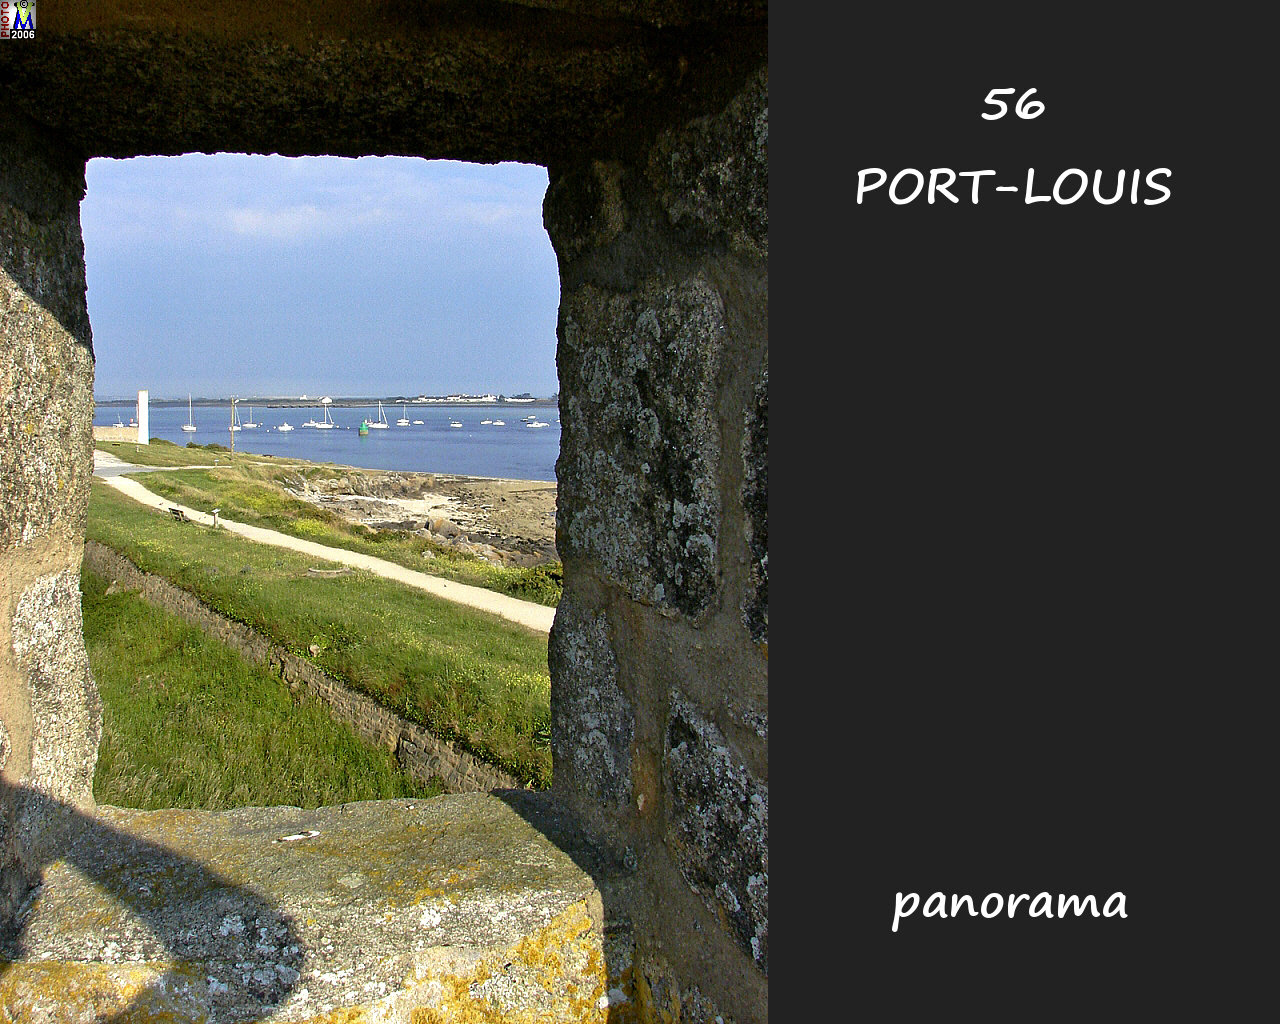 56PORT-LOUIS_panorama_102.jpg